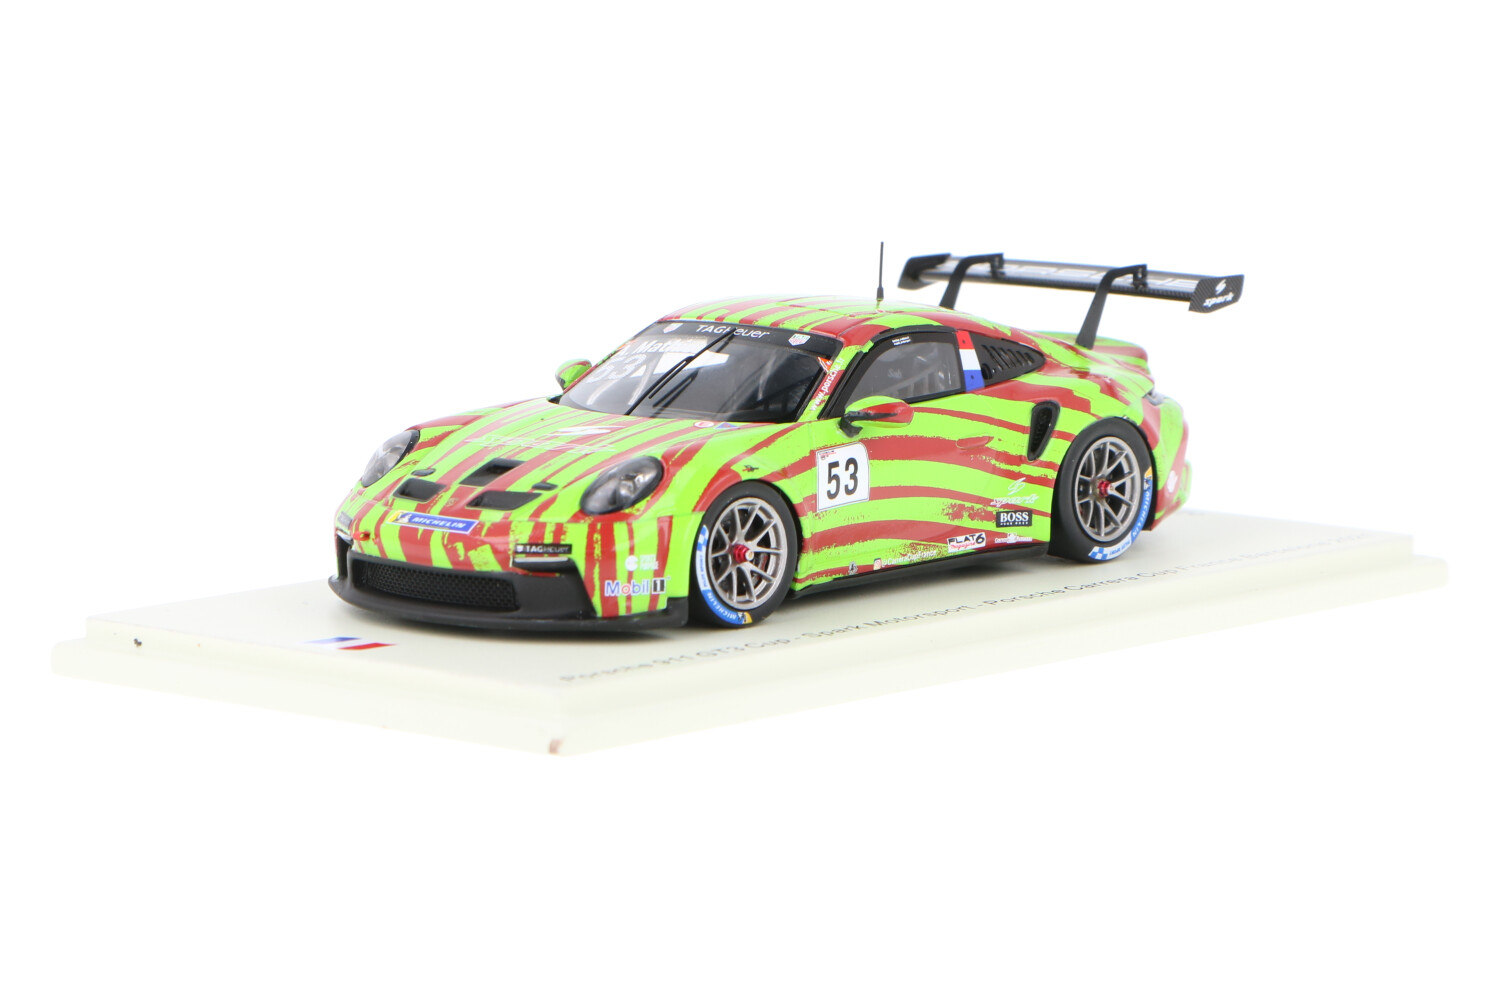 Porsche 911 GT3 Cup - Modelauto schaal 1:43